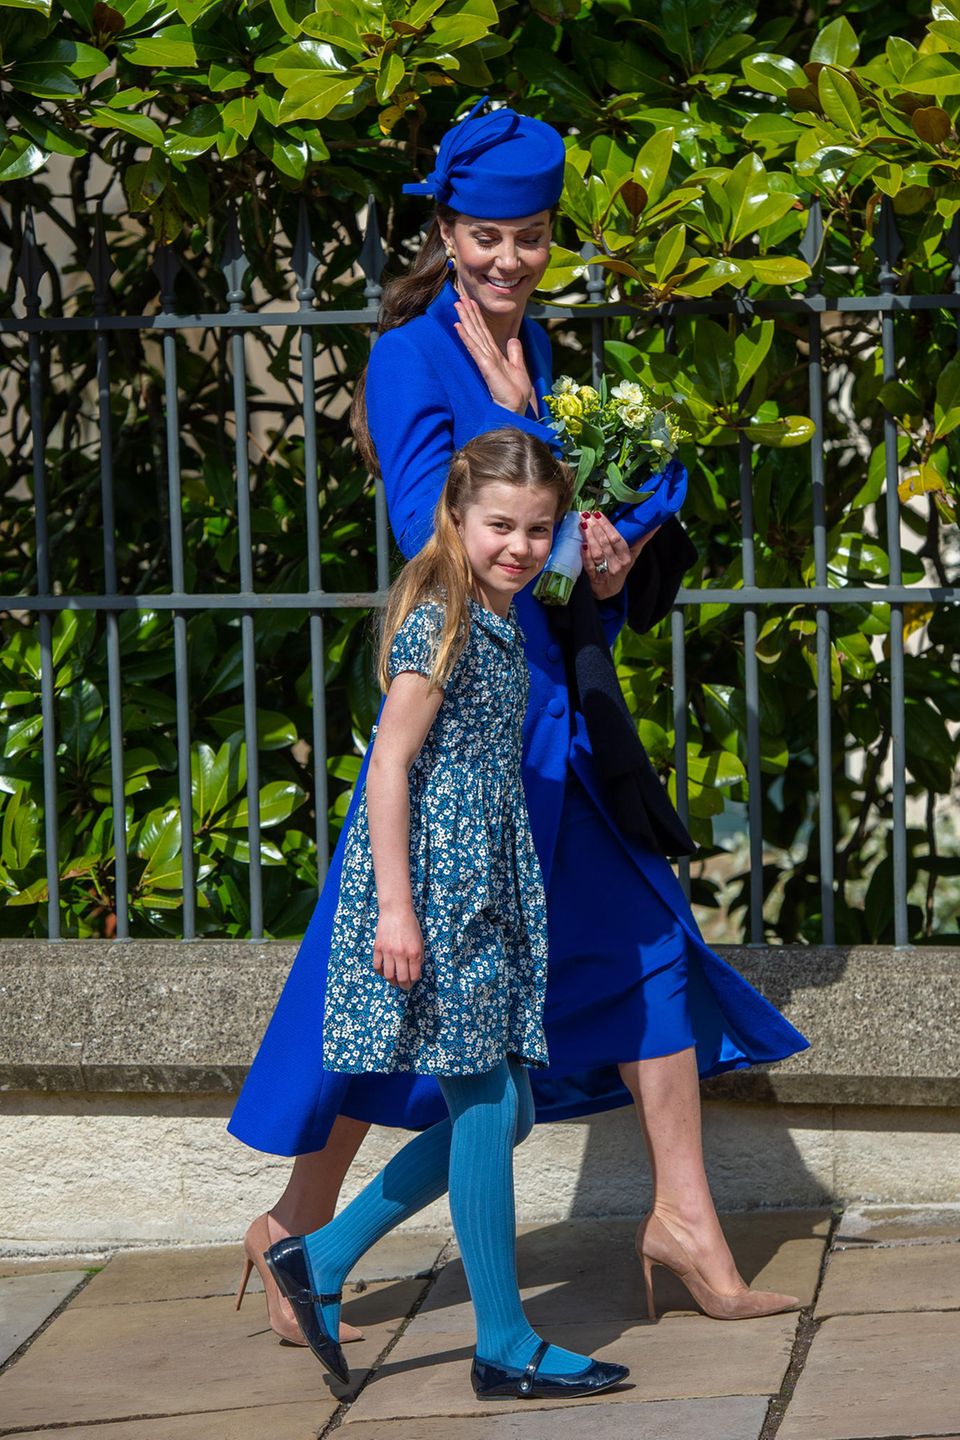 Prinzessin Charlotte und ihre Mutter Catherine, Princess of Wales, läuten mit ihren Outfits den Frühling ein. In einem hübschen Blümchenkleid mit passender blauer Strumpfhose stiehlt Charlotte ihrer Mama die Show, die sich für ein königsblaues Osteroutfit entschieden hat. Bei Charlottes Kleid handelt es sich um ein Modell der britischen Bekleidungsmarke "Rachel Riley UK" für rund 60 Euro.